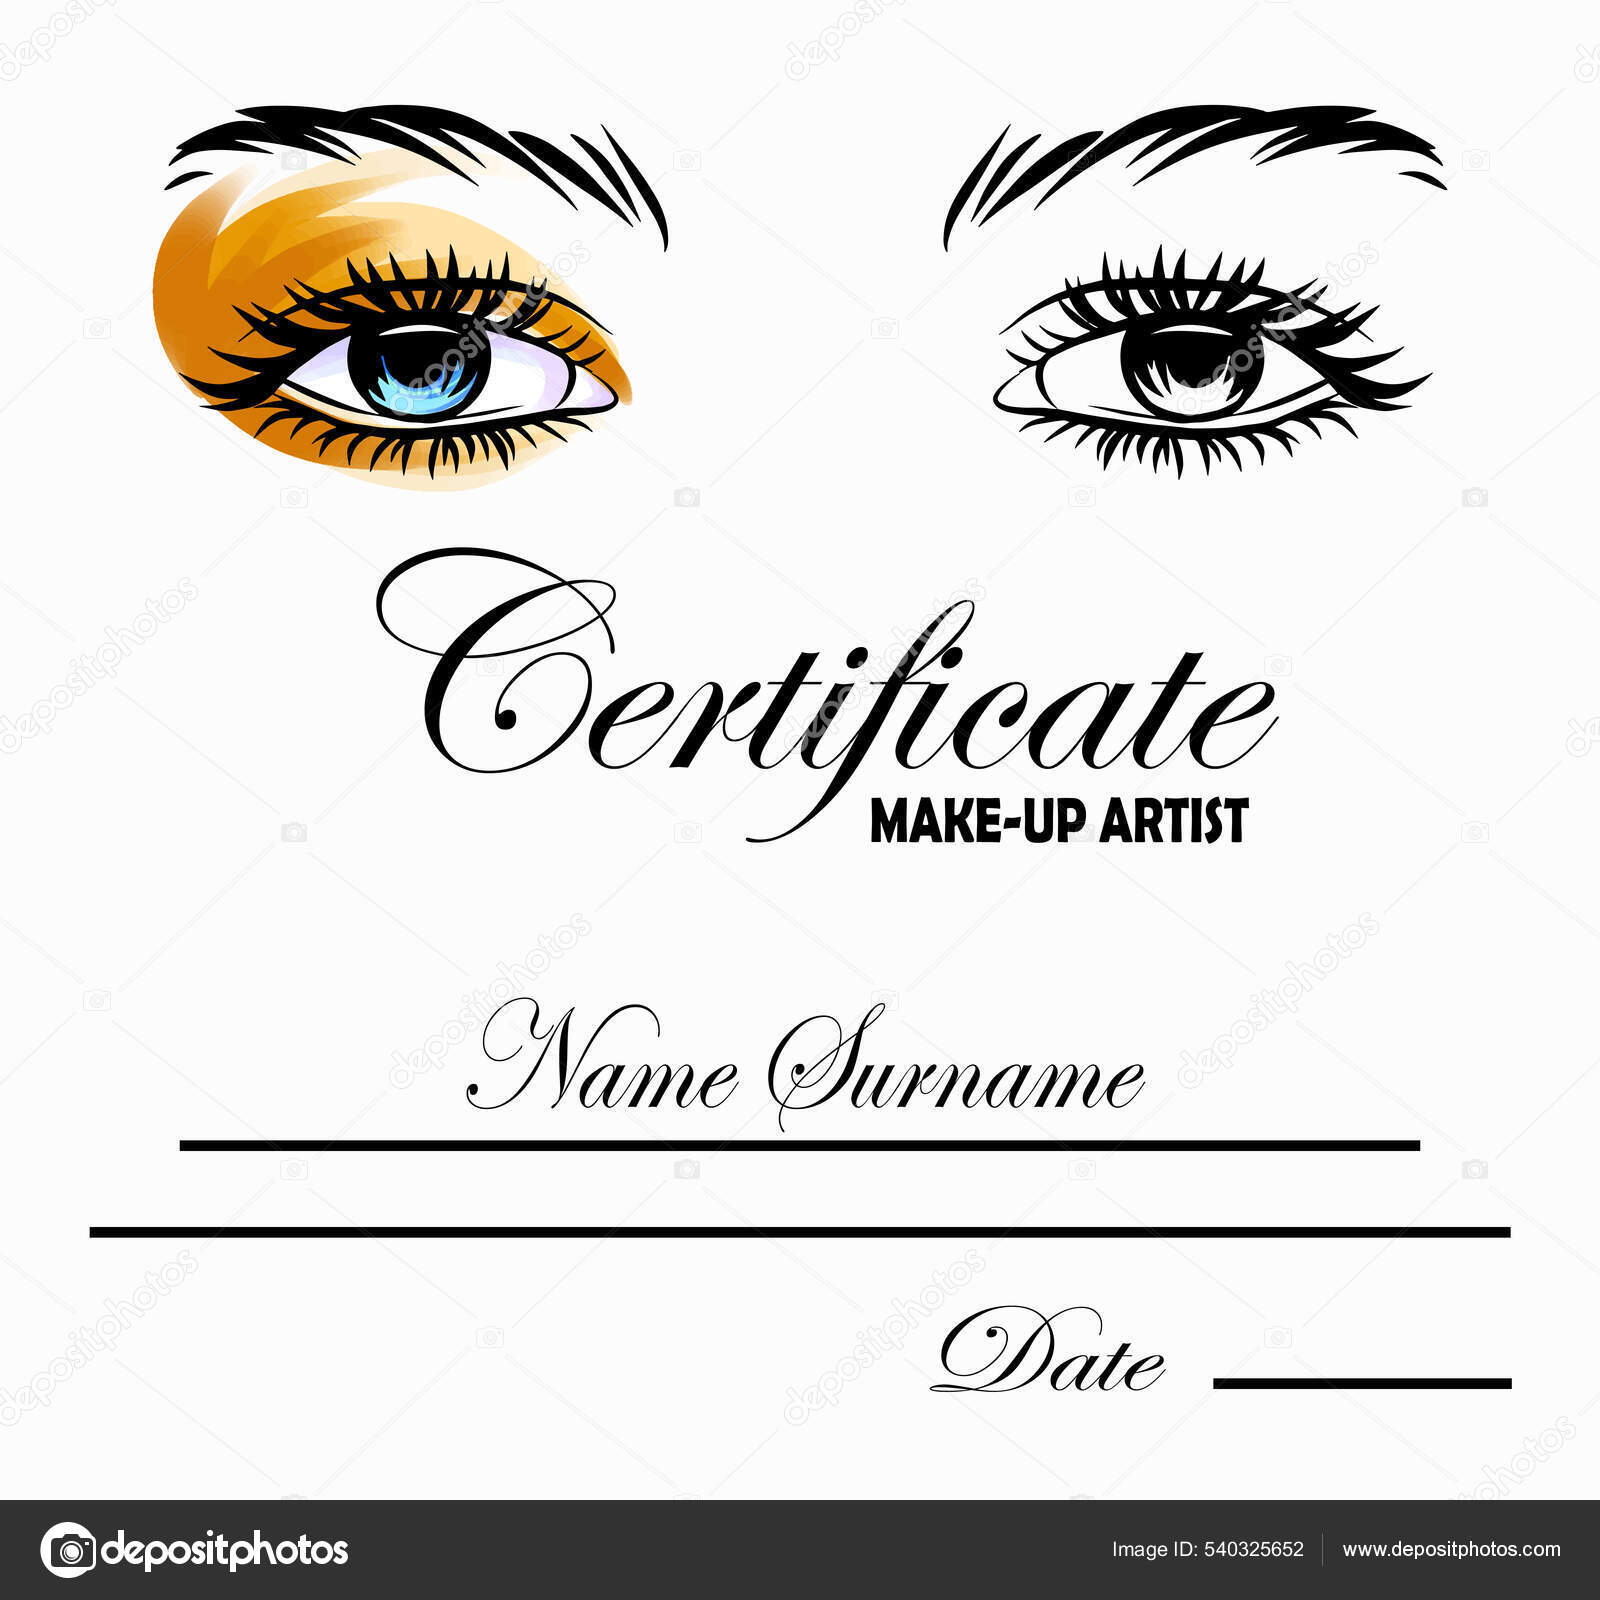 Make Artist Certificate Template Beauty